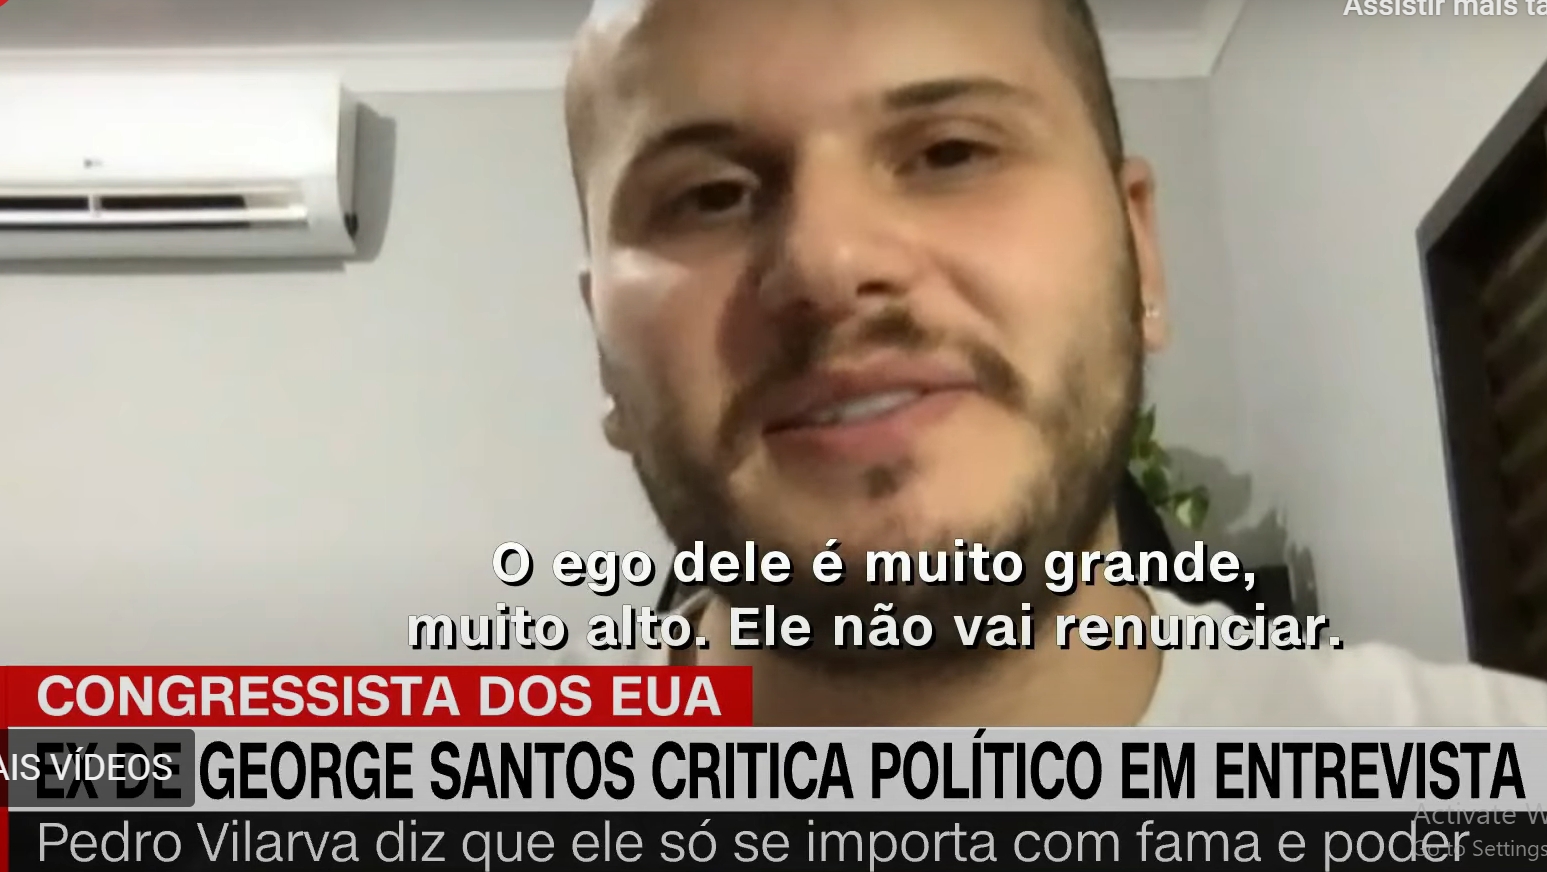 Recentemente, a CNN Brasil ouviu Pedro Vilarva, ex-namorado de George Santos. Ele afirmou que o ego de George é tão grande que ele jamais vai renunciar, apesar das pressões que vêm sofrendo desde que suas mentiras foram descobertas. 